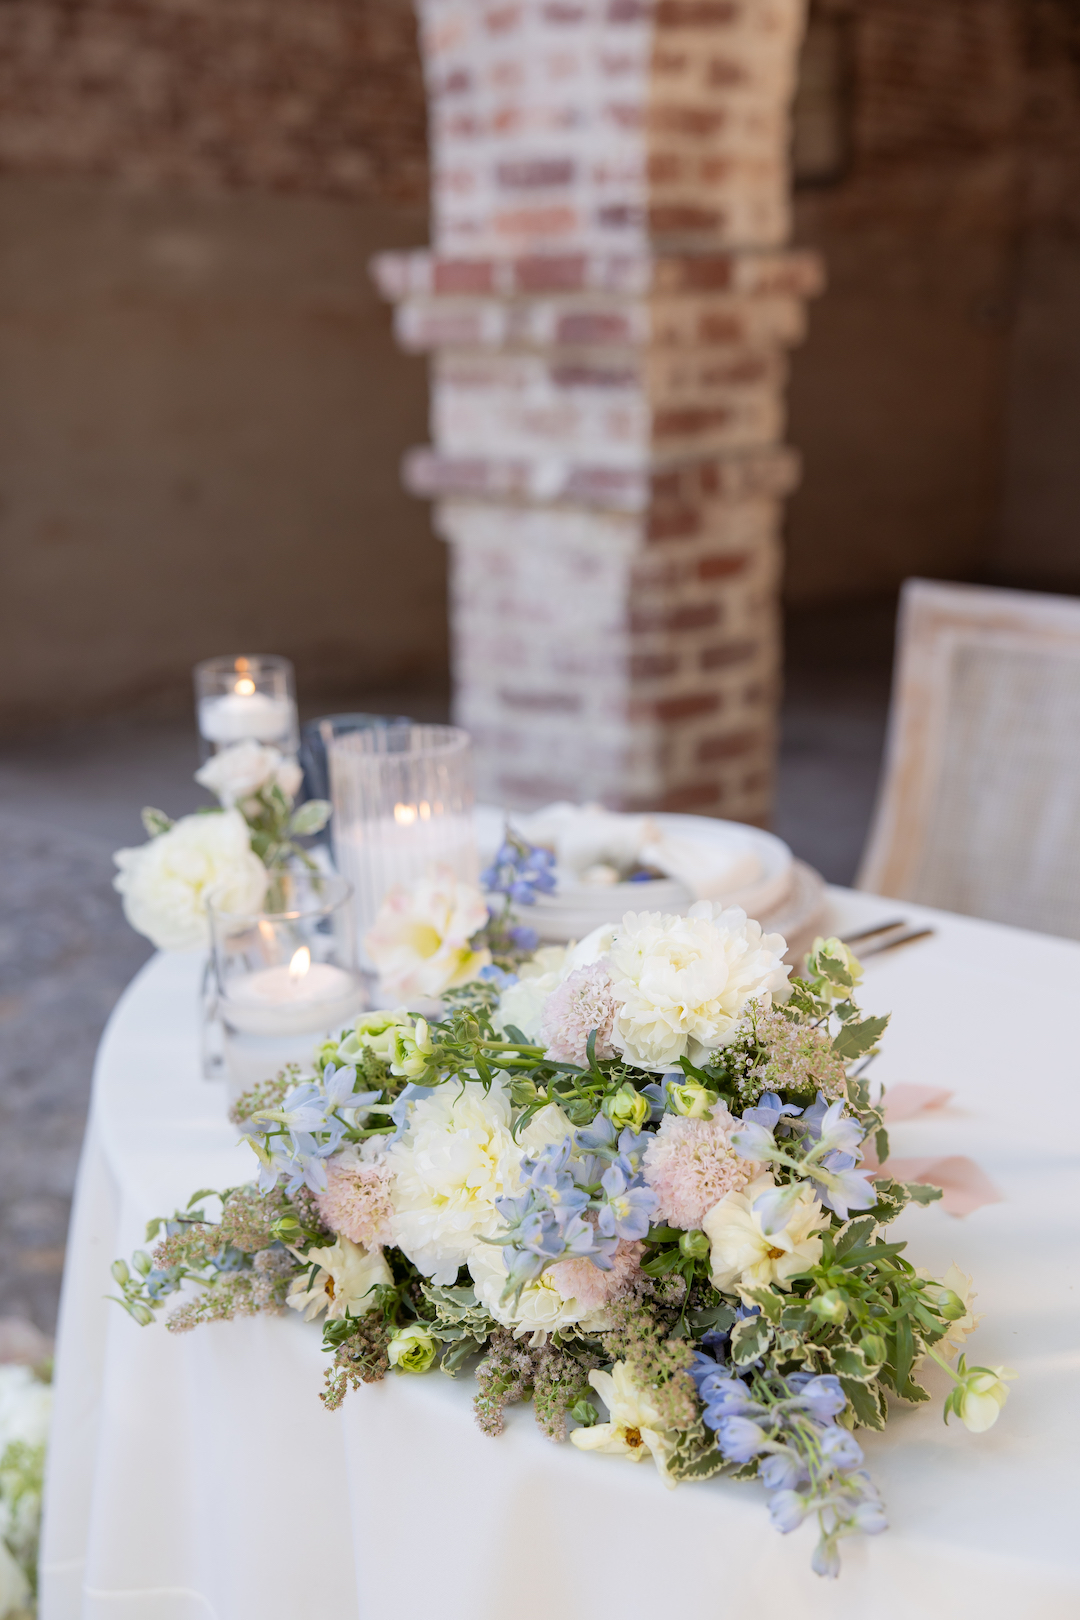 Romantic pastel floral arrangement wedding table decor. 